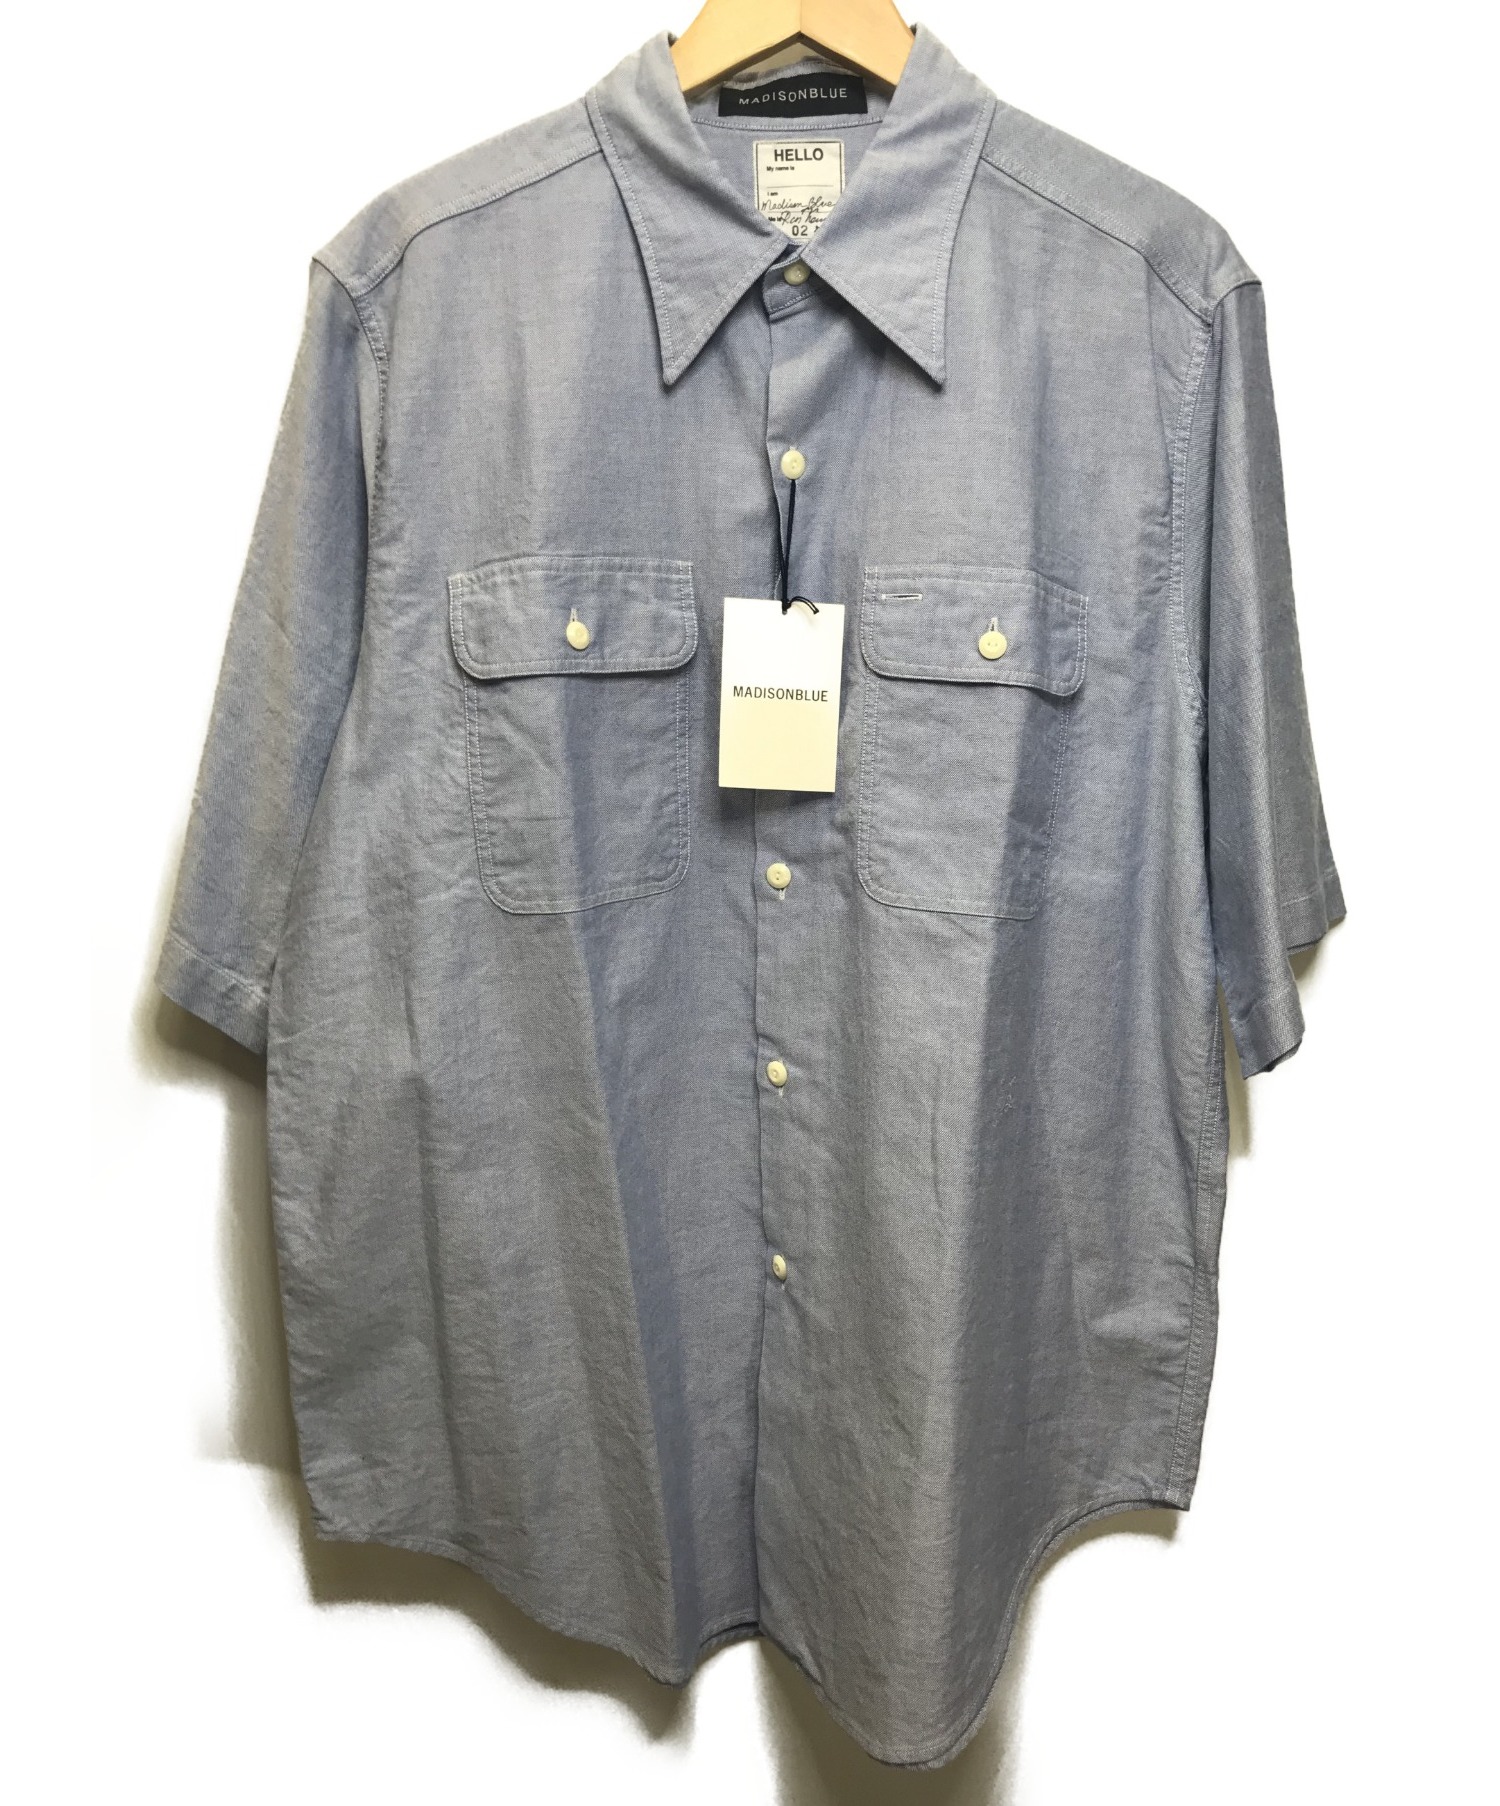 MADISON BLUE (マディソンブルー) 半袖シャツ ブルー サイズ:2 未使用品